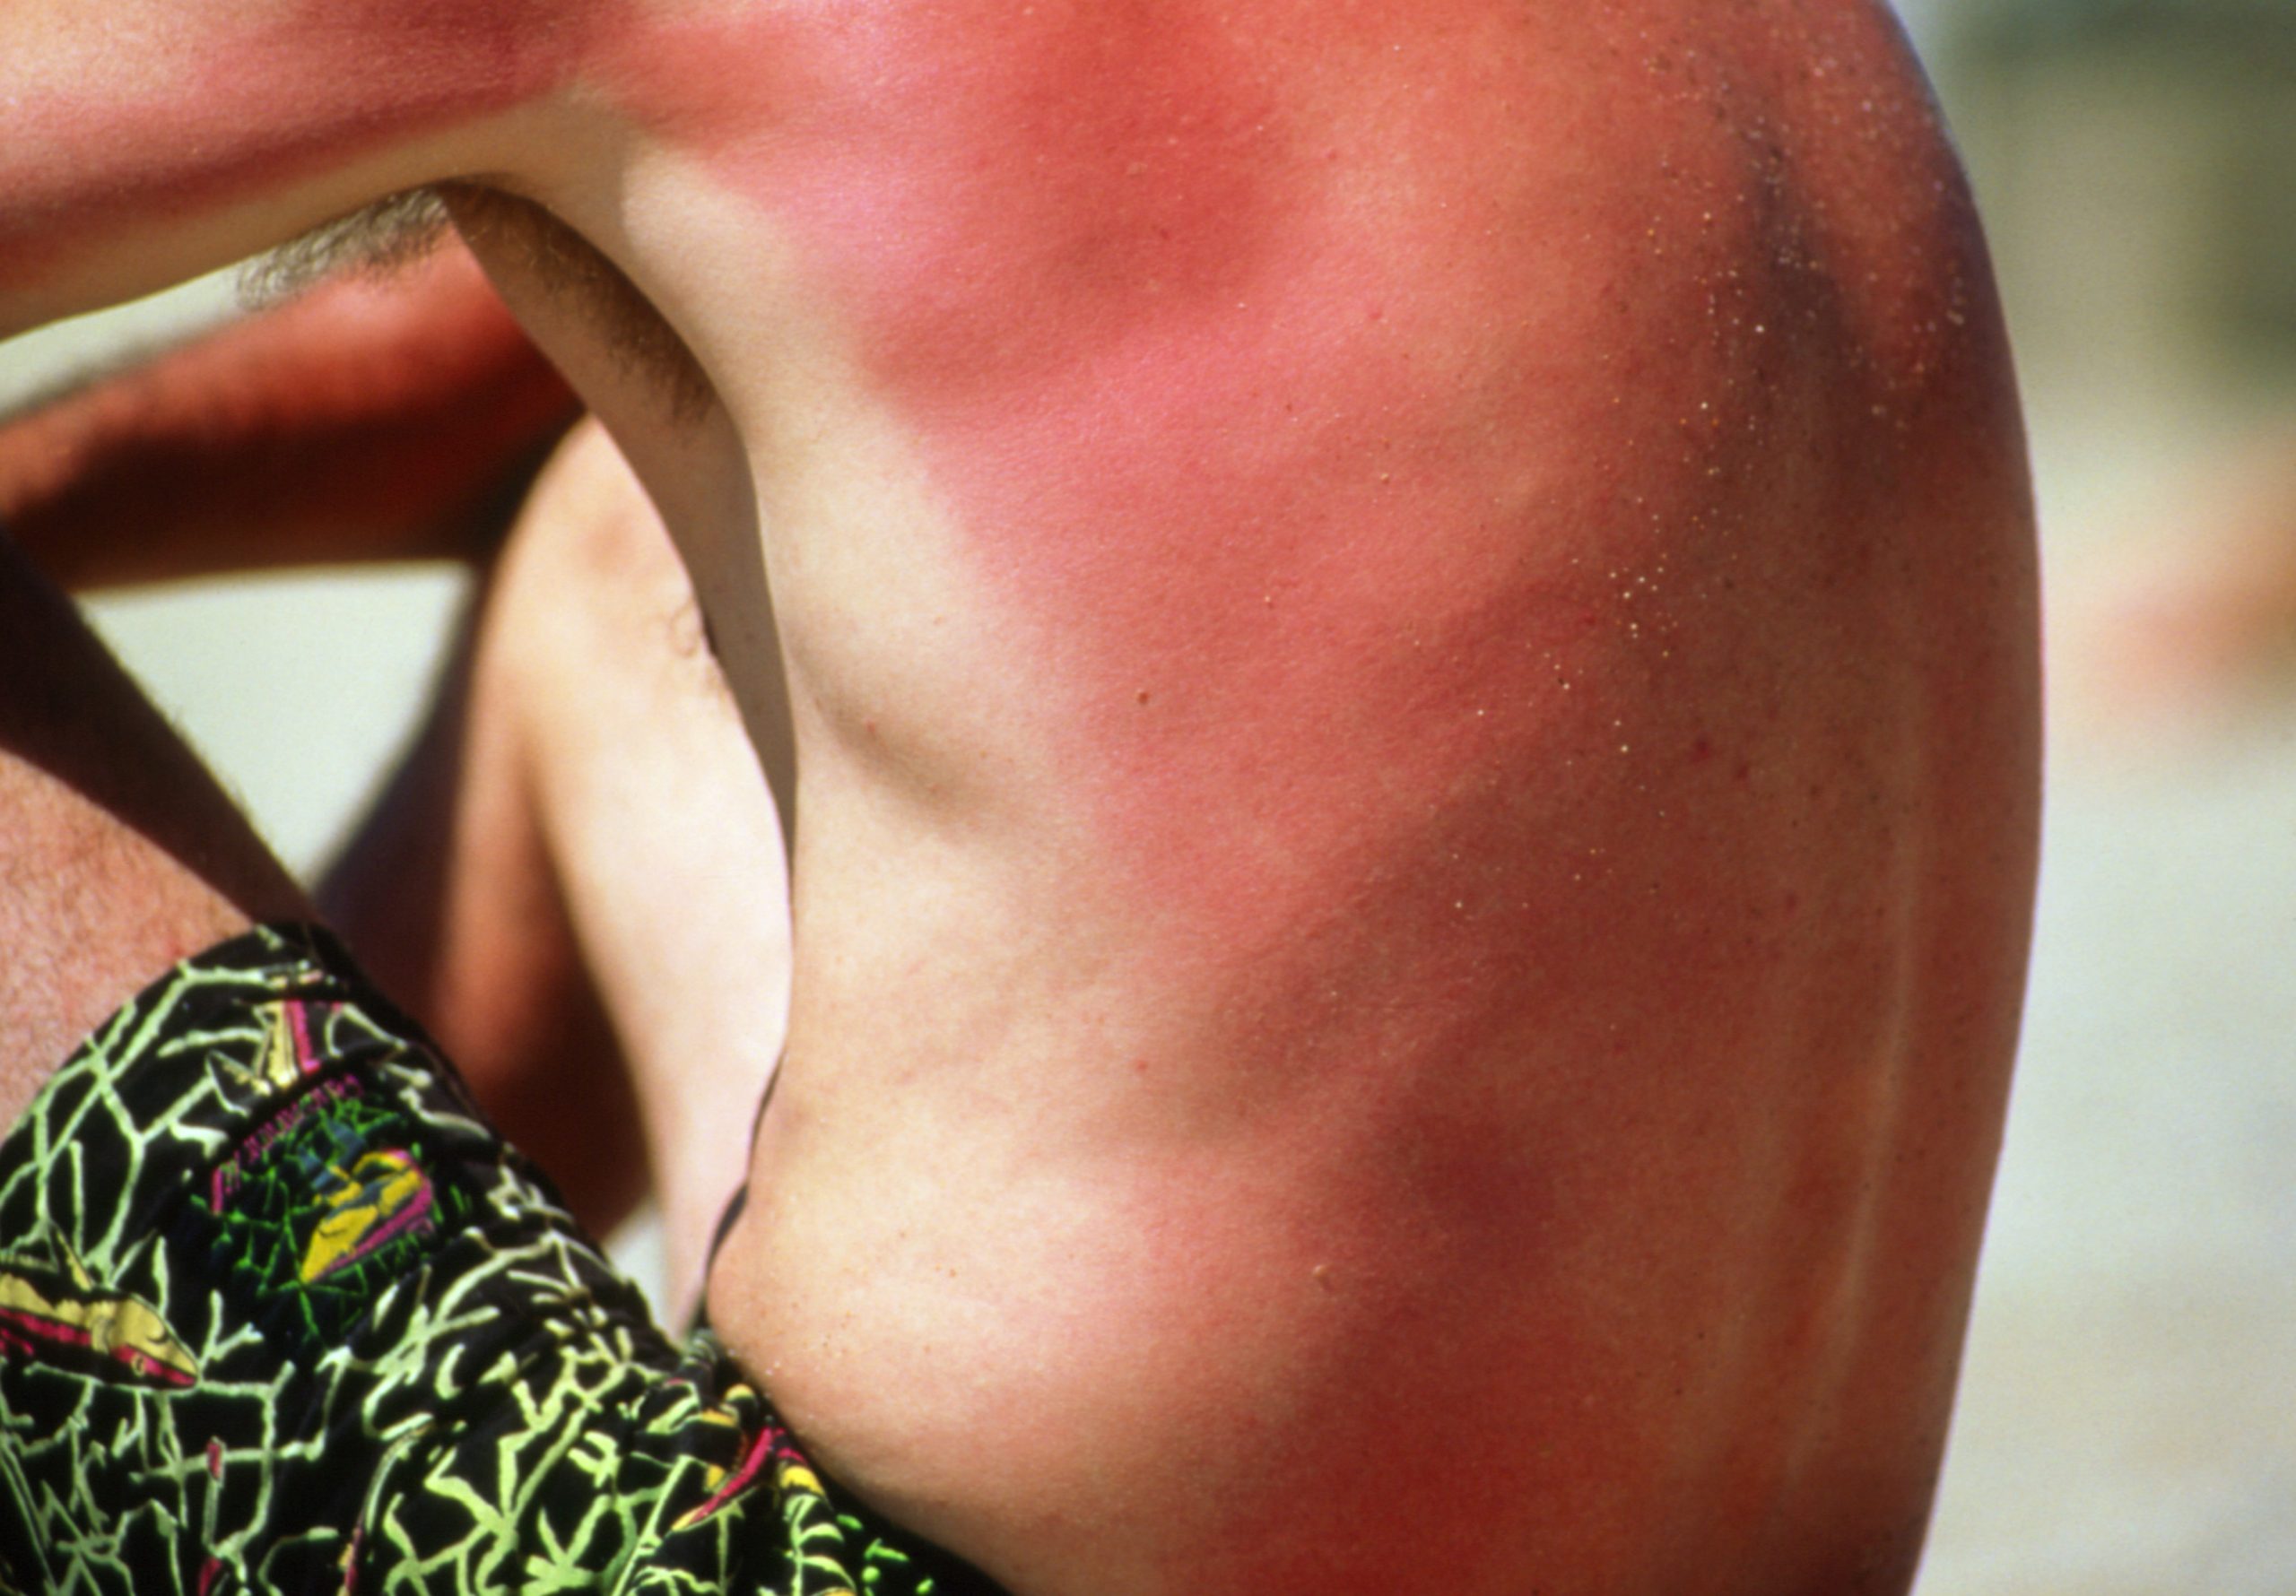 مع اقتراب فصل الصيف، كيف تقي جسمك من حروق الشمس - التعرض المفرط للأشعة فوق البنفسجية الصادرة عن الشمس - الإصابة بسرطان الجلد